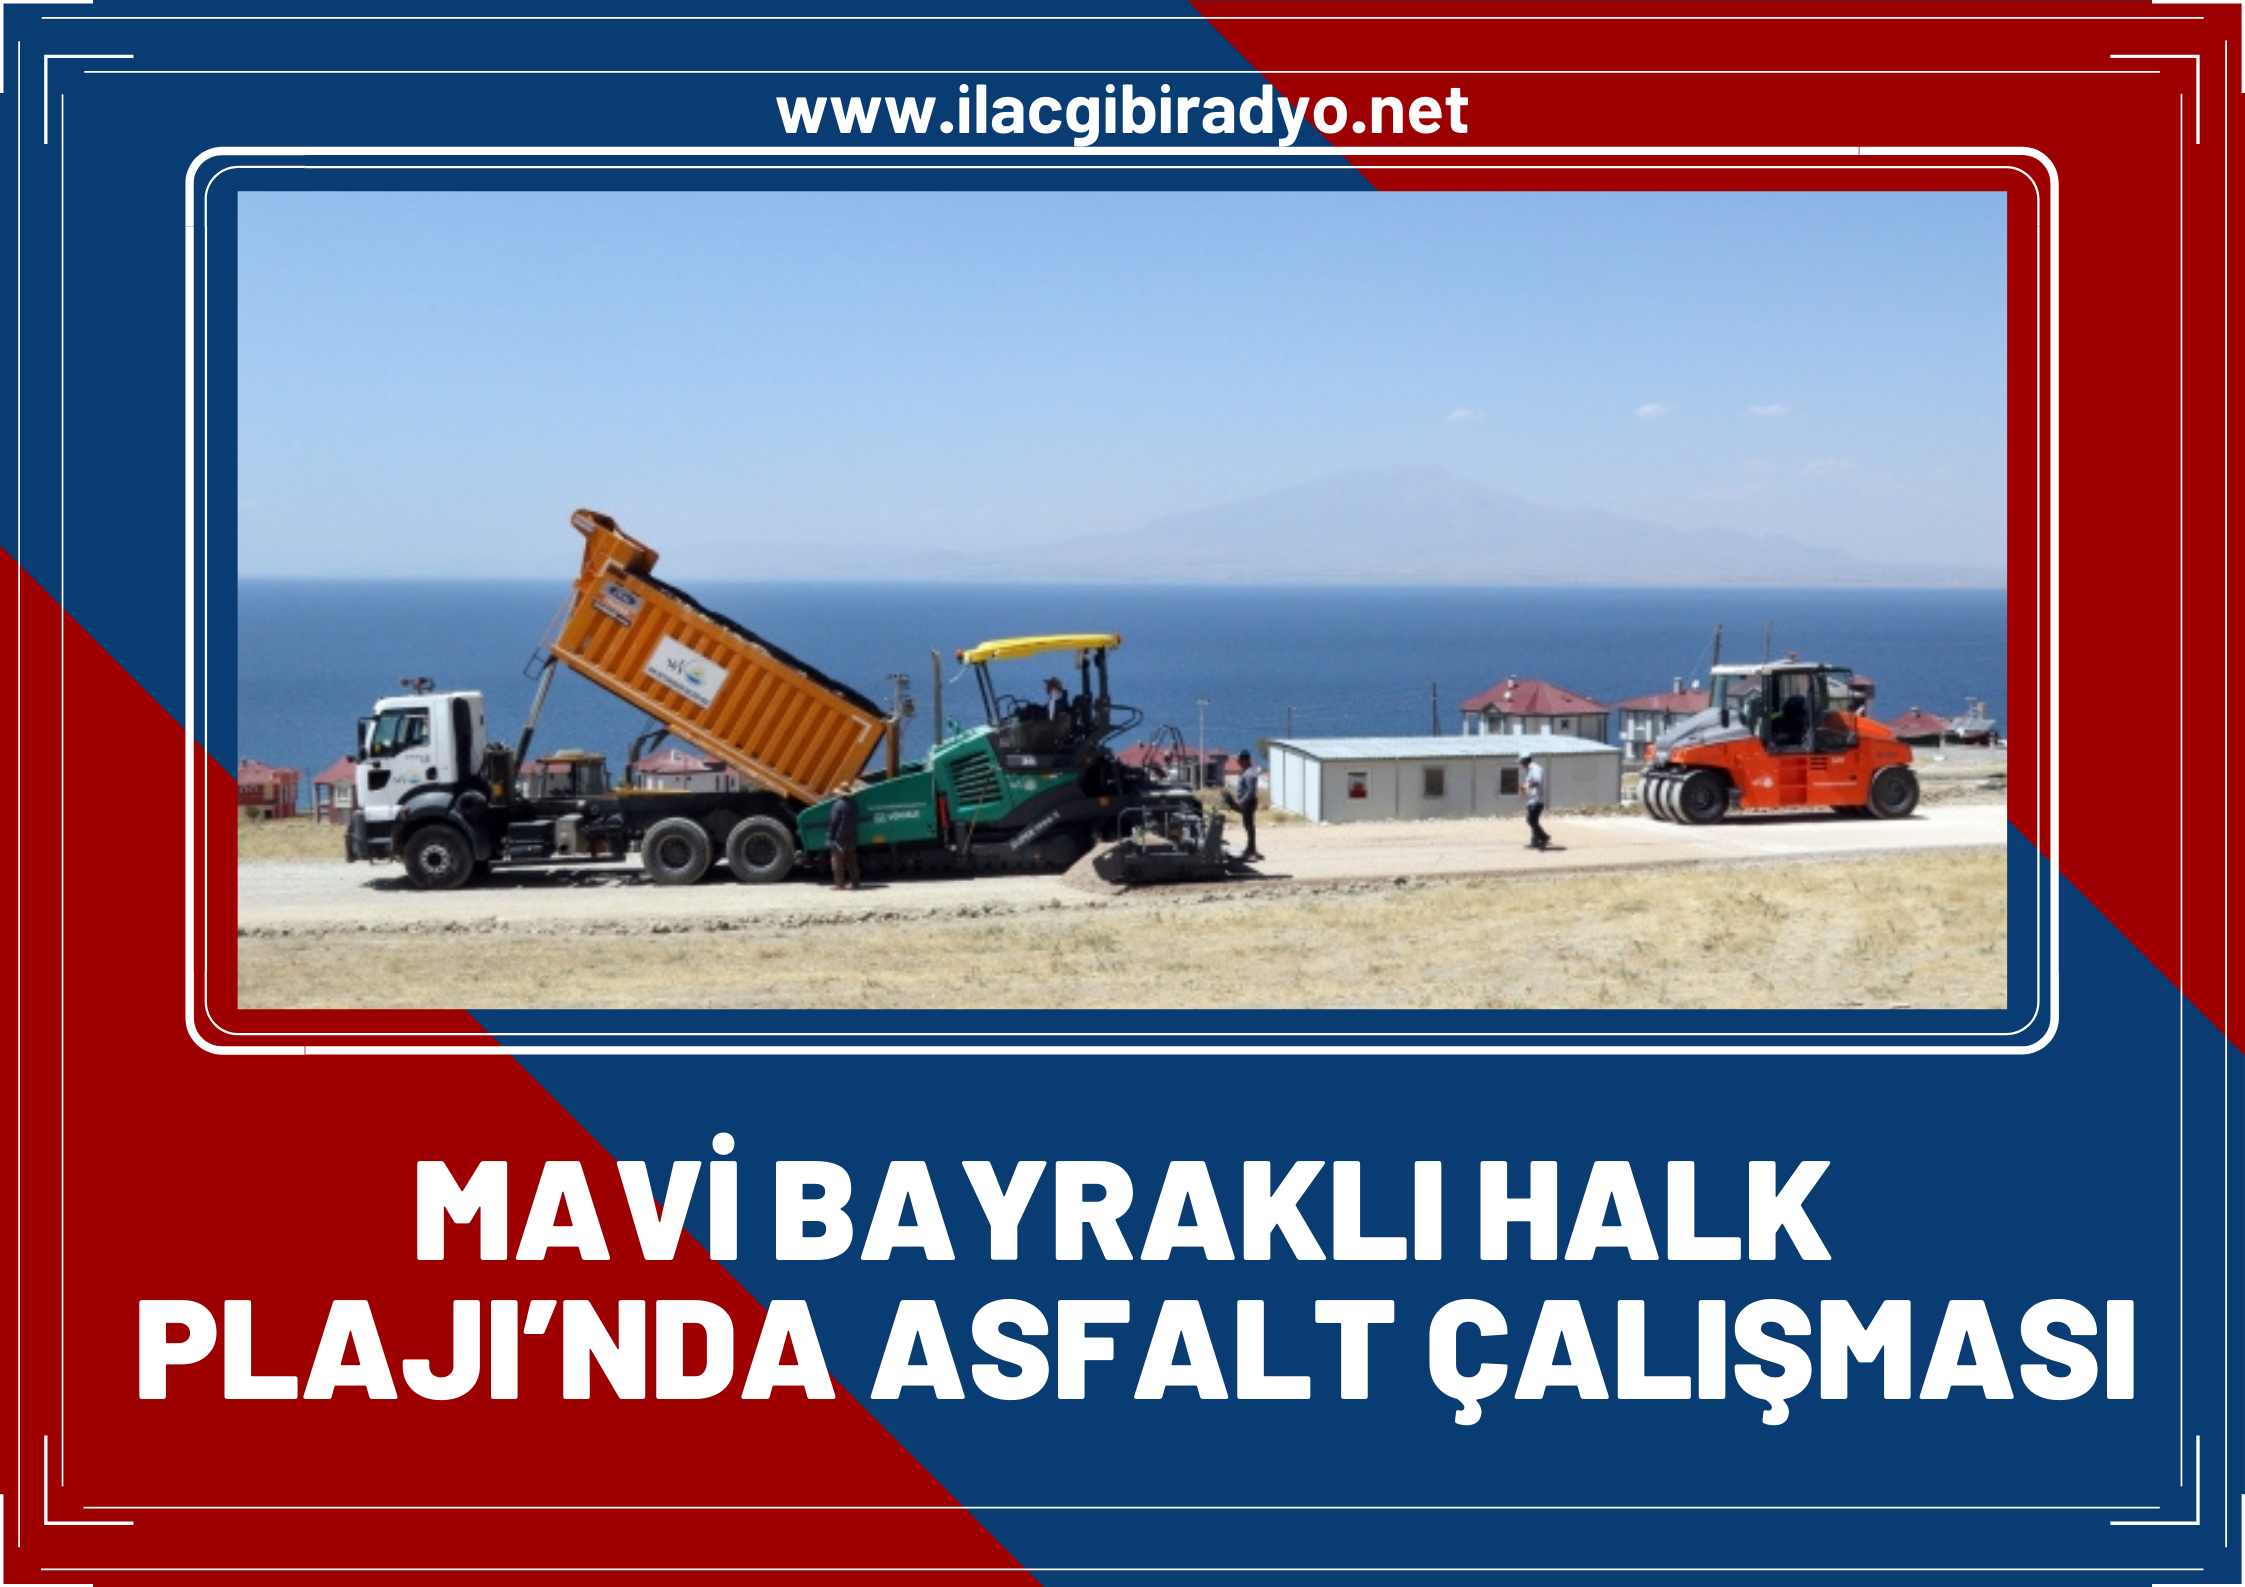 Van Büyükşehir Belediyesi’nden Türkiye’nin ilk ve tek 'Mavi Bayraklı Halk Plajı’nda asfalt çalışması!